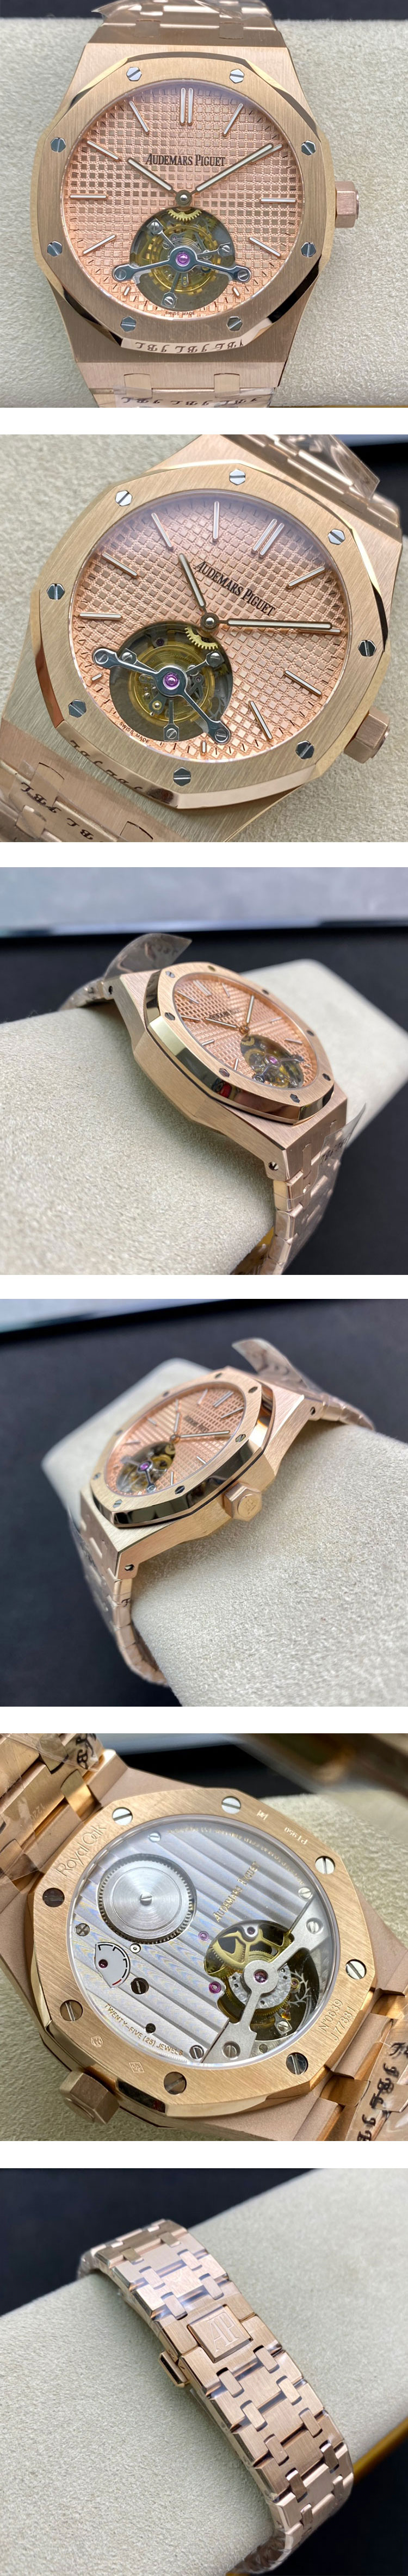 限定品腕時計オーデマ ピゲロイヤル オーク26515OR.OO.1220OR.01(トゥールビヨン)